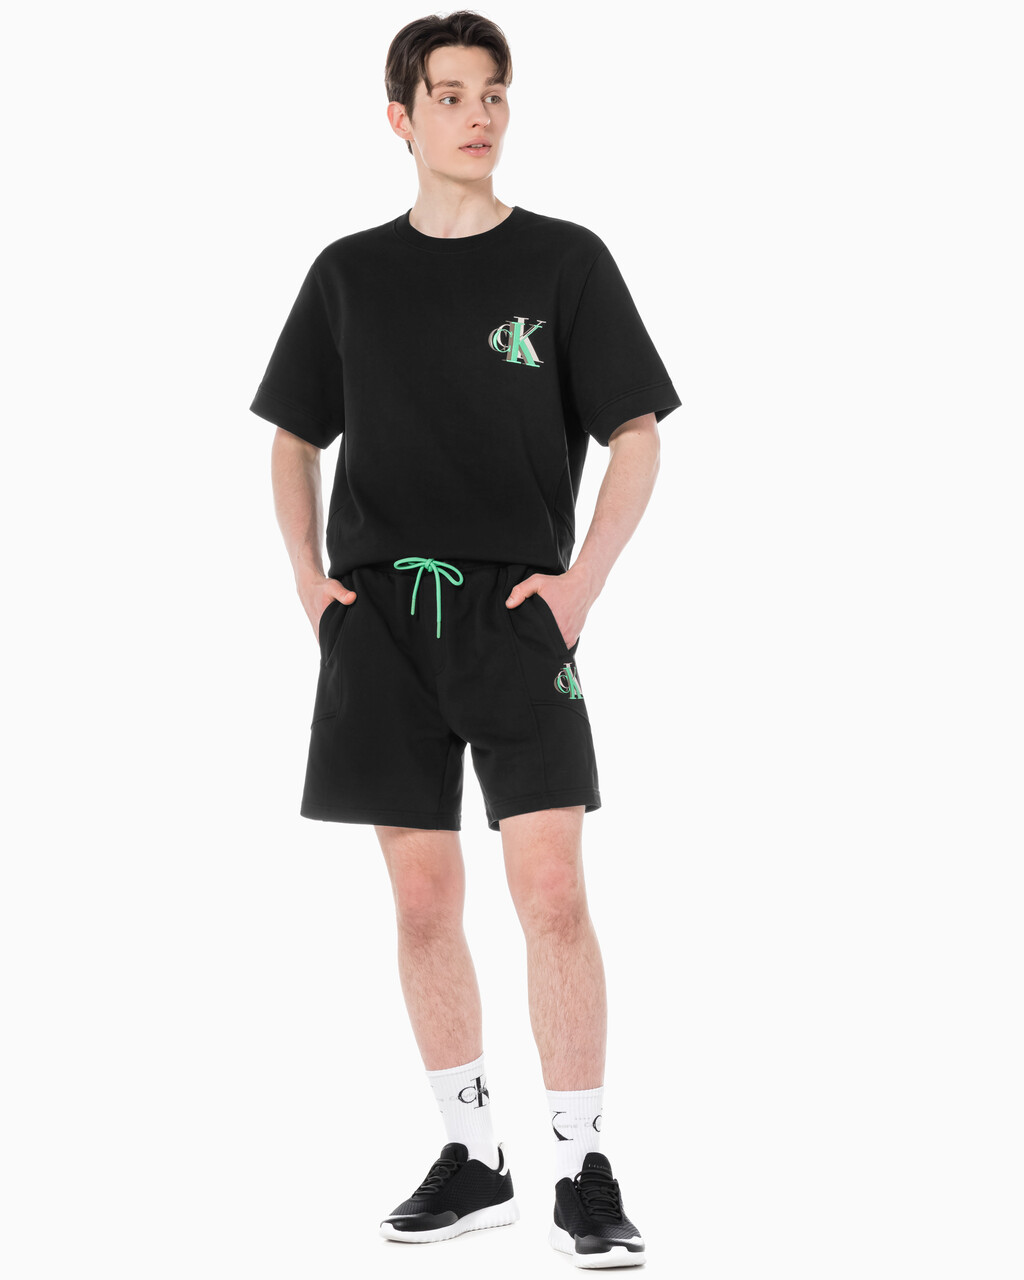 Buy 남성 시즈널 트리플 모노그램 스웨트 쇼츠 in color CK BLACK